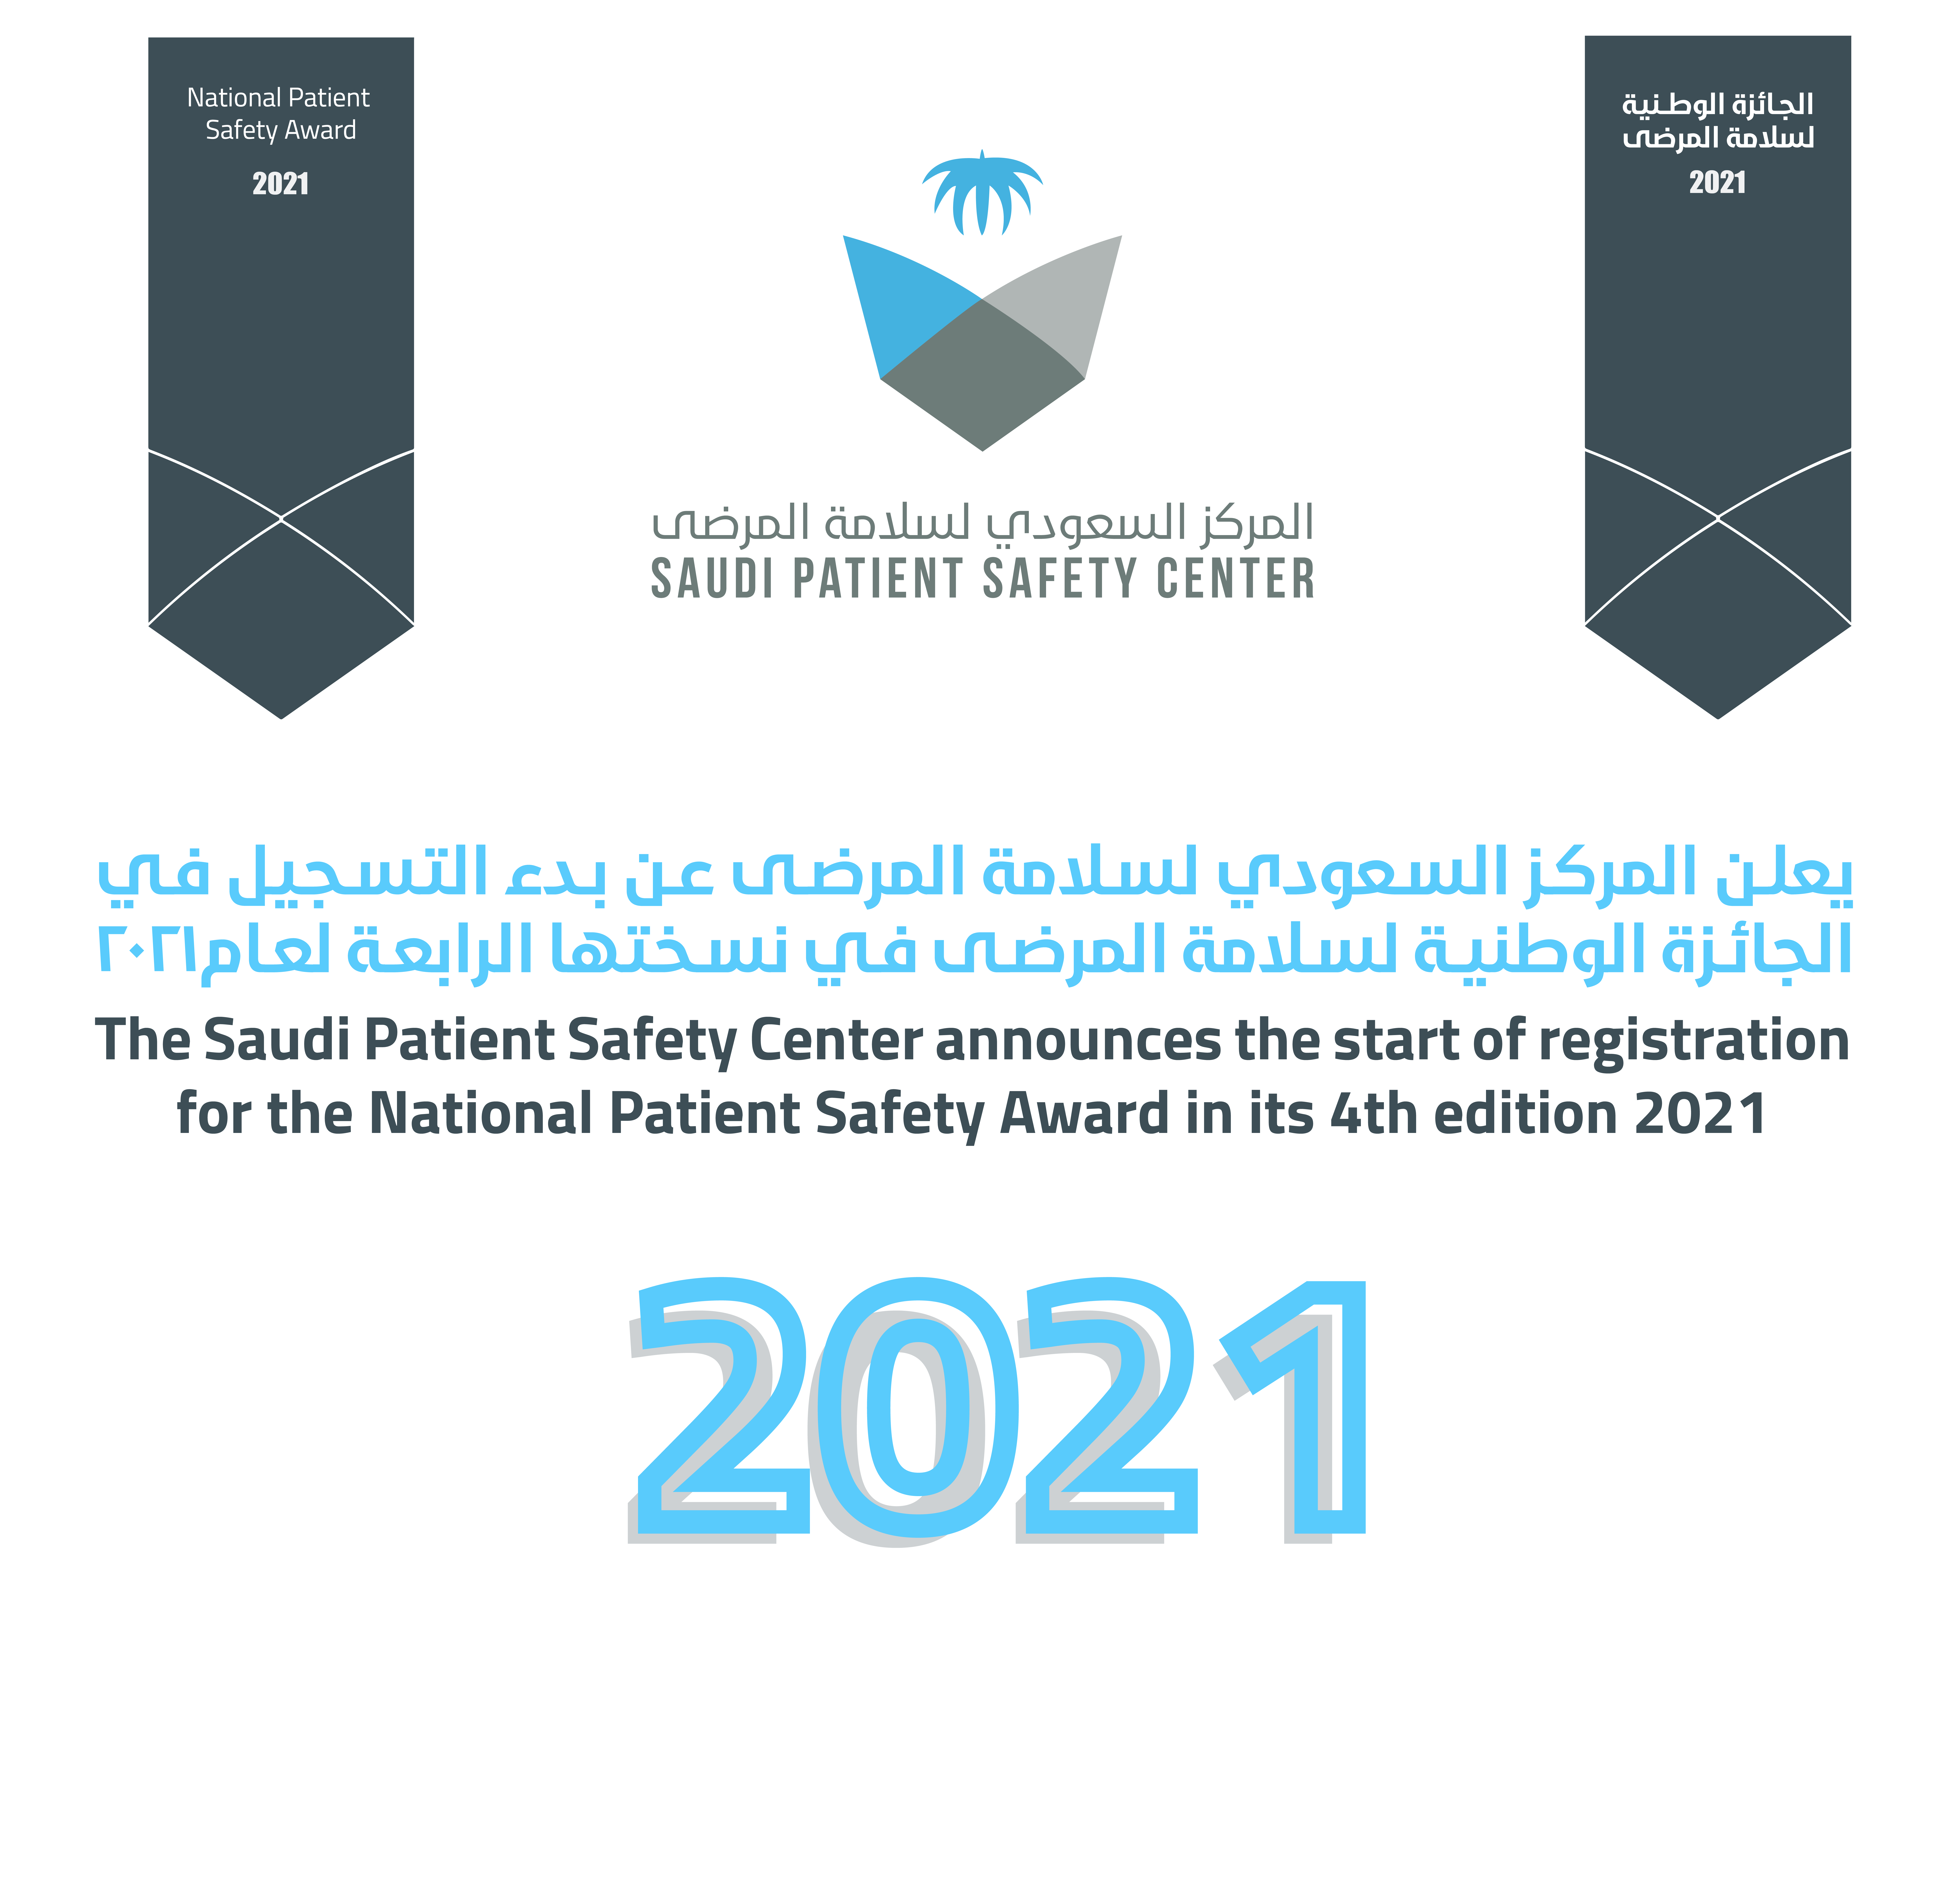 يعلن المركز السعودي لسلامة المرضى عن بدء التسجيل في الجائزة الوطنية لسلامة المرضى في نسختها الرابعة لعام 2021 